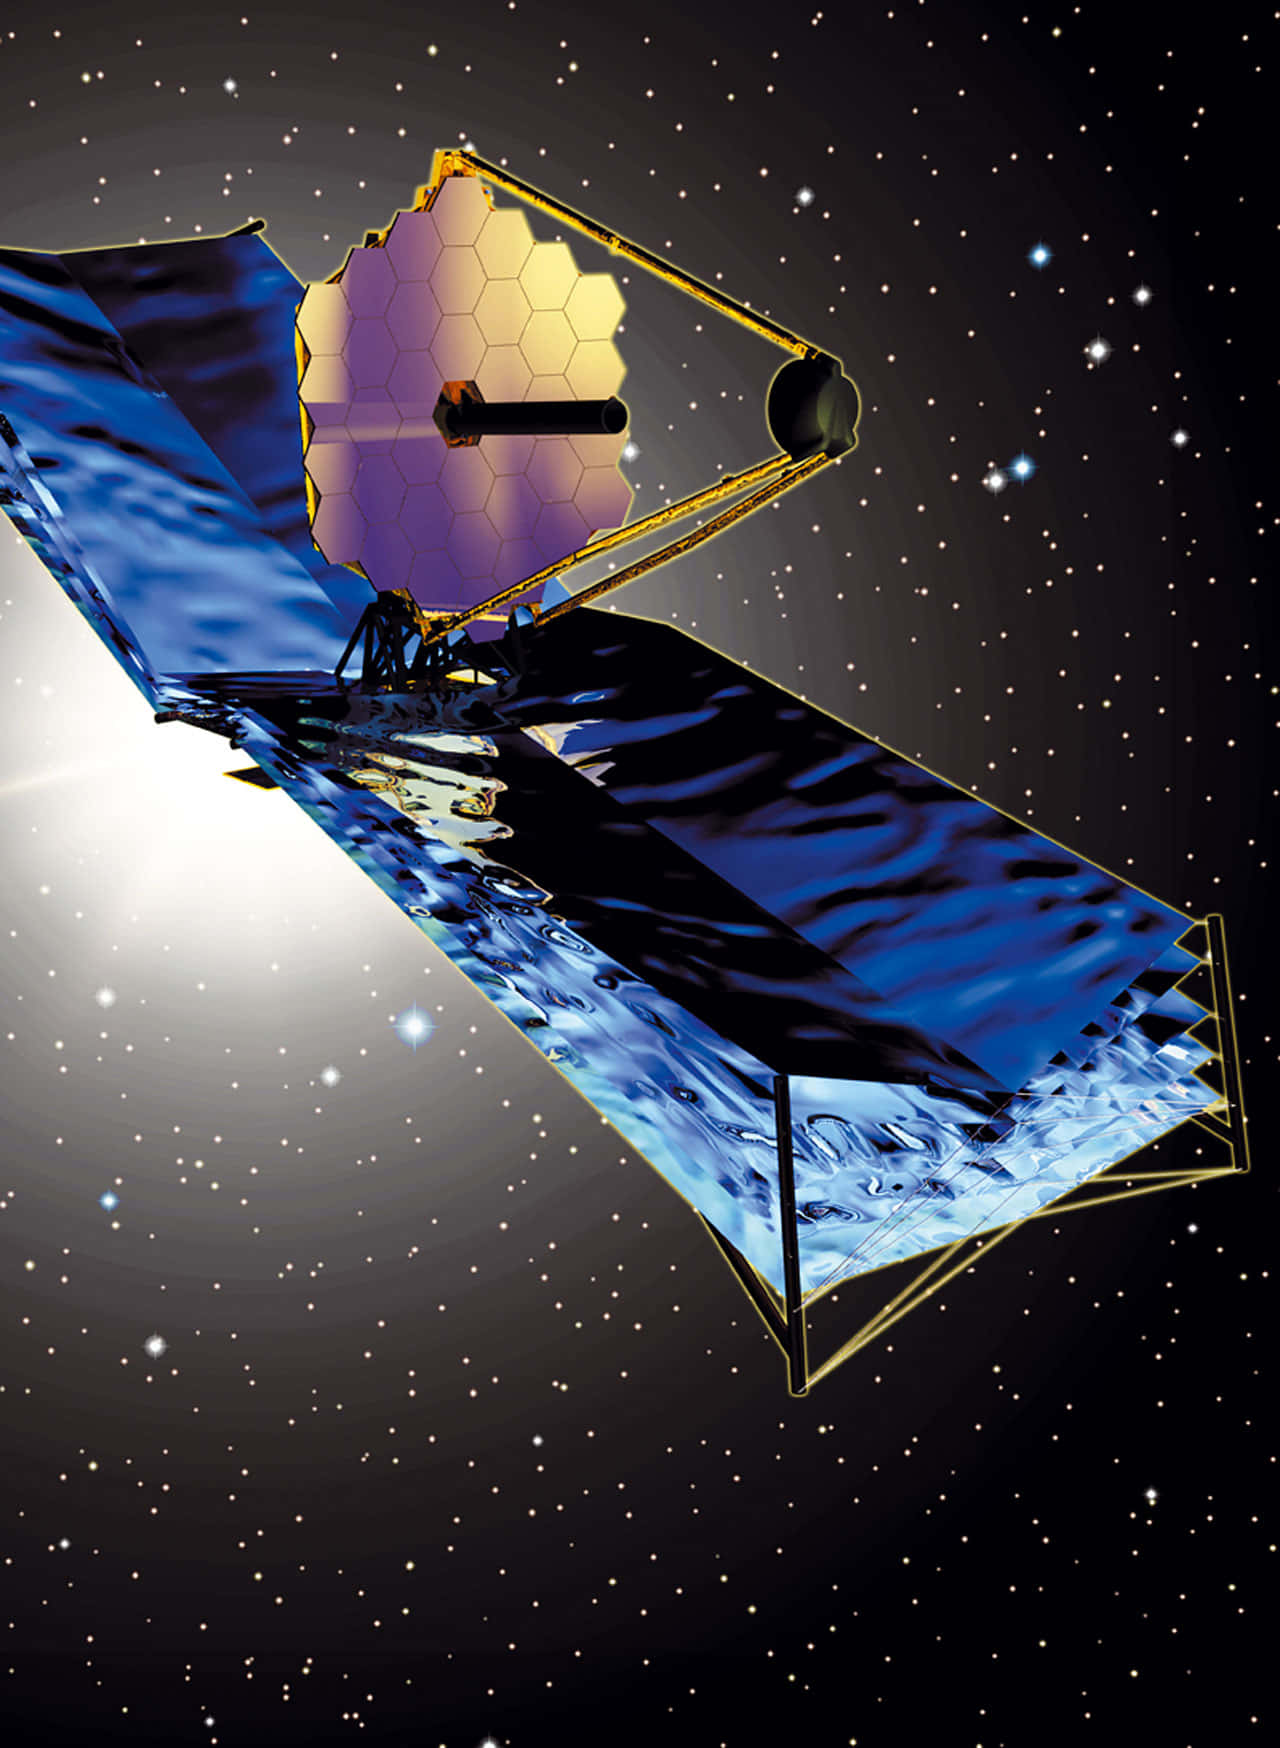 Imagenmágica Del Telescopio James Webb